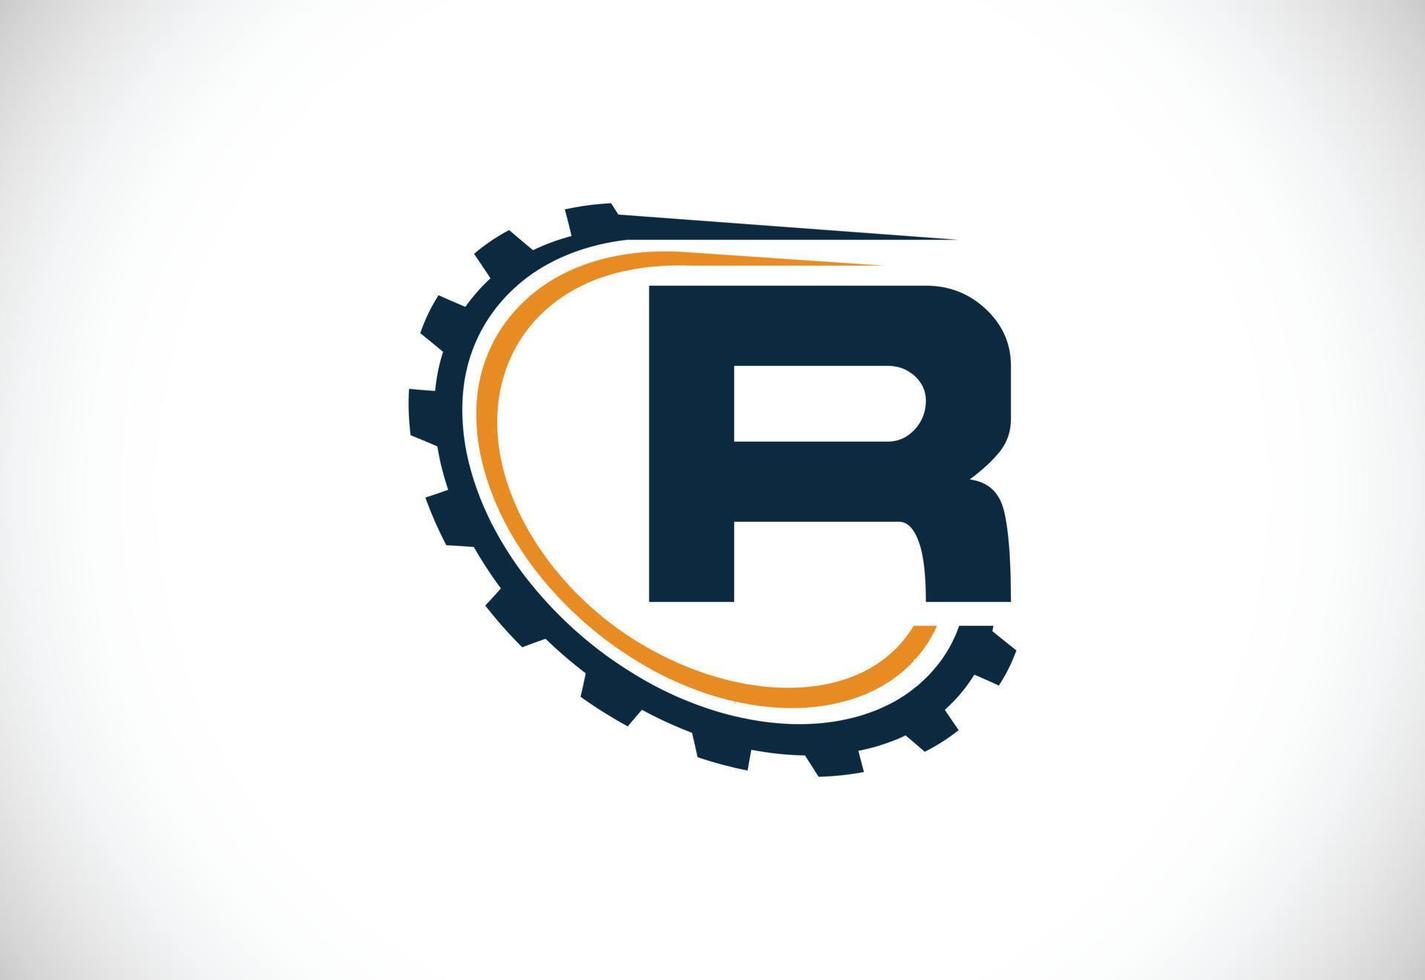 anfängliches r-alphabet mit einem zahnrad. Design des Zahnradingenieur-Logos. Logo für Automobil, Mechanik, Technologie, Einstellung, Reparaturgeschäft und Firmenidentität vektor